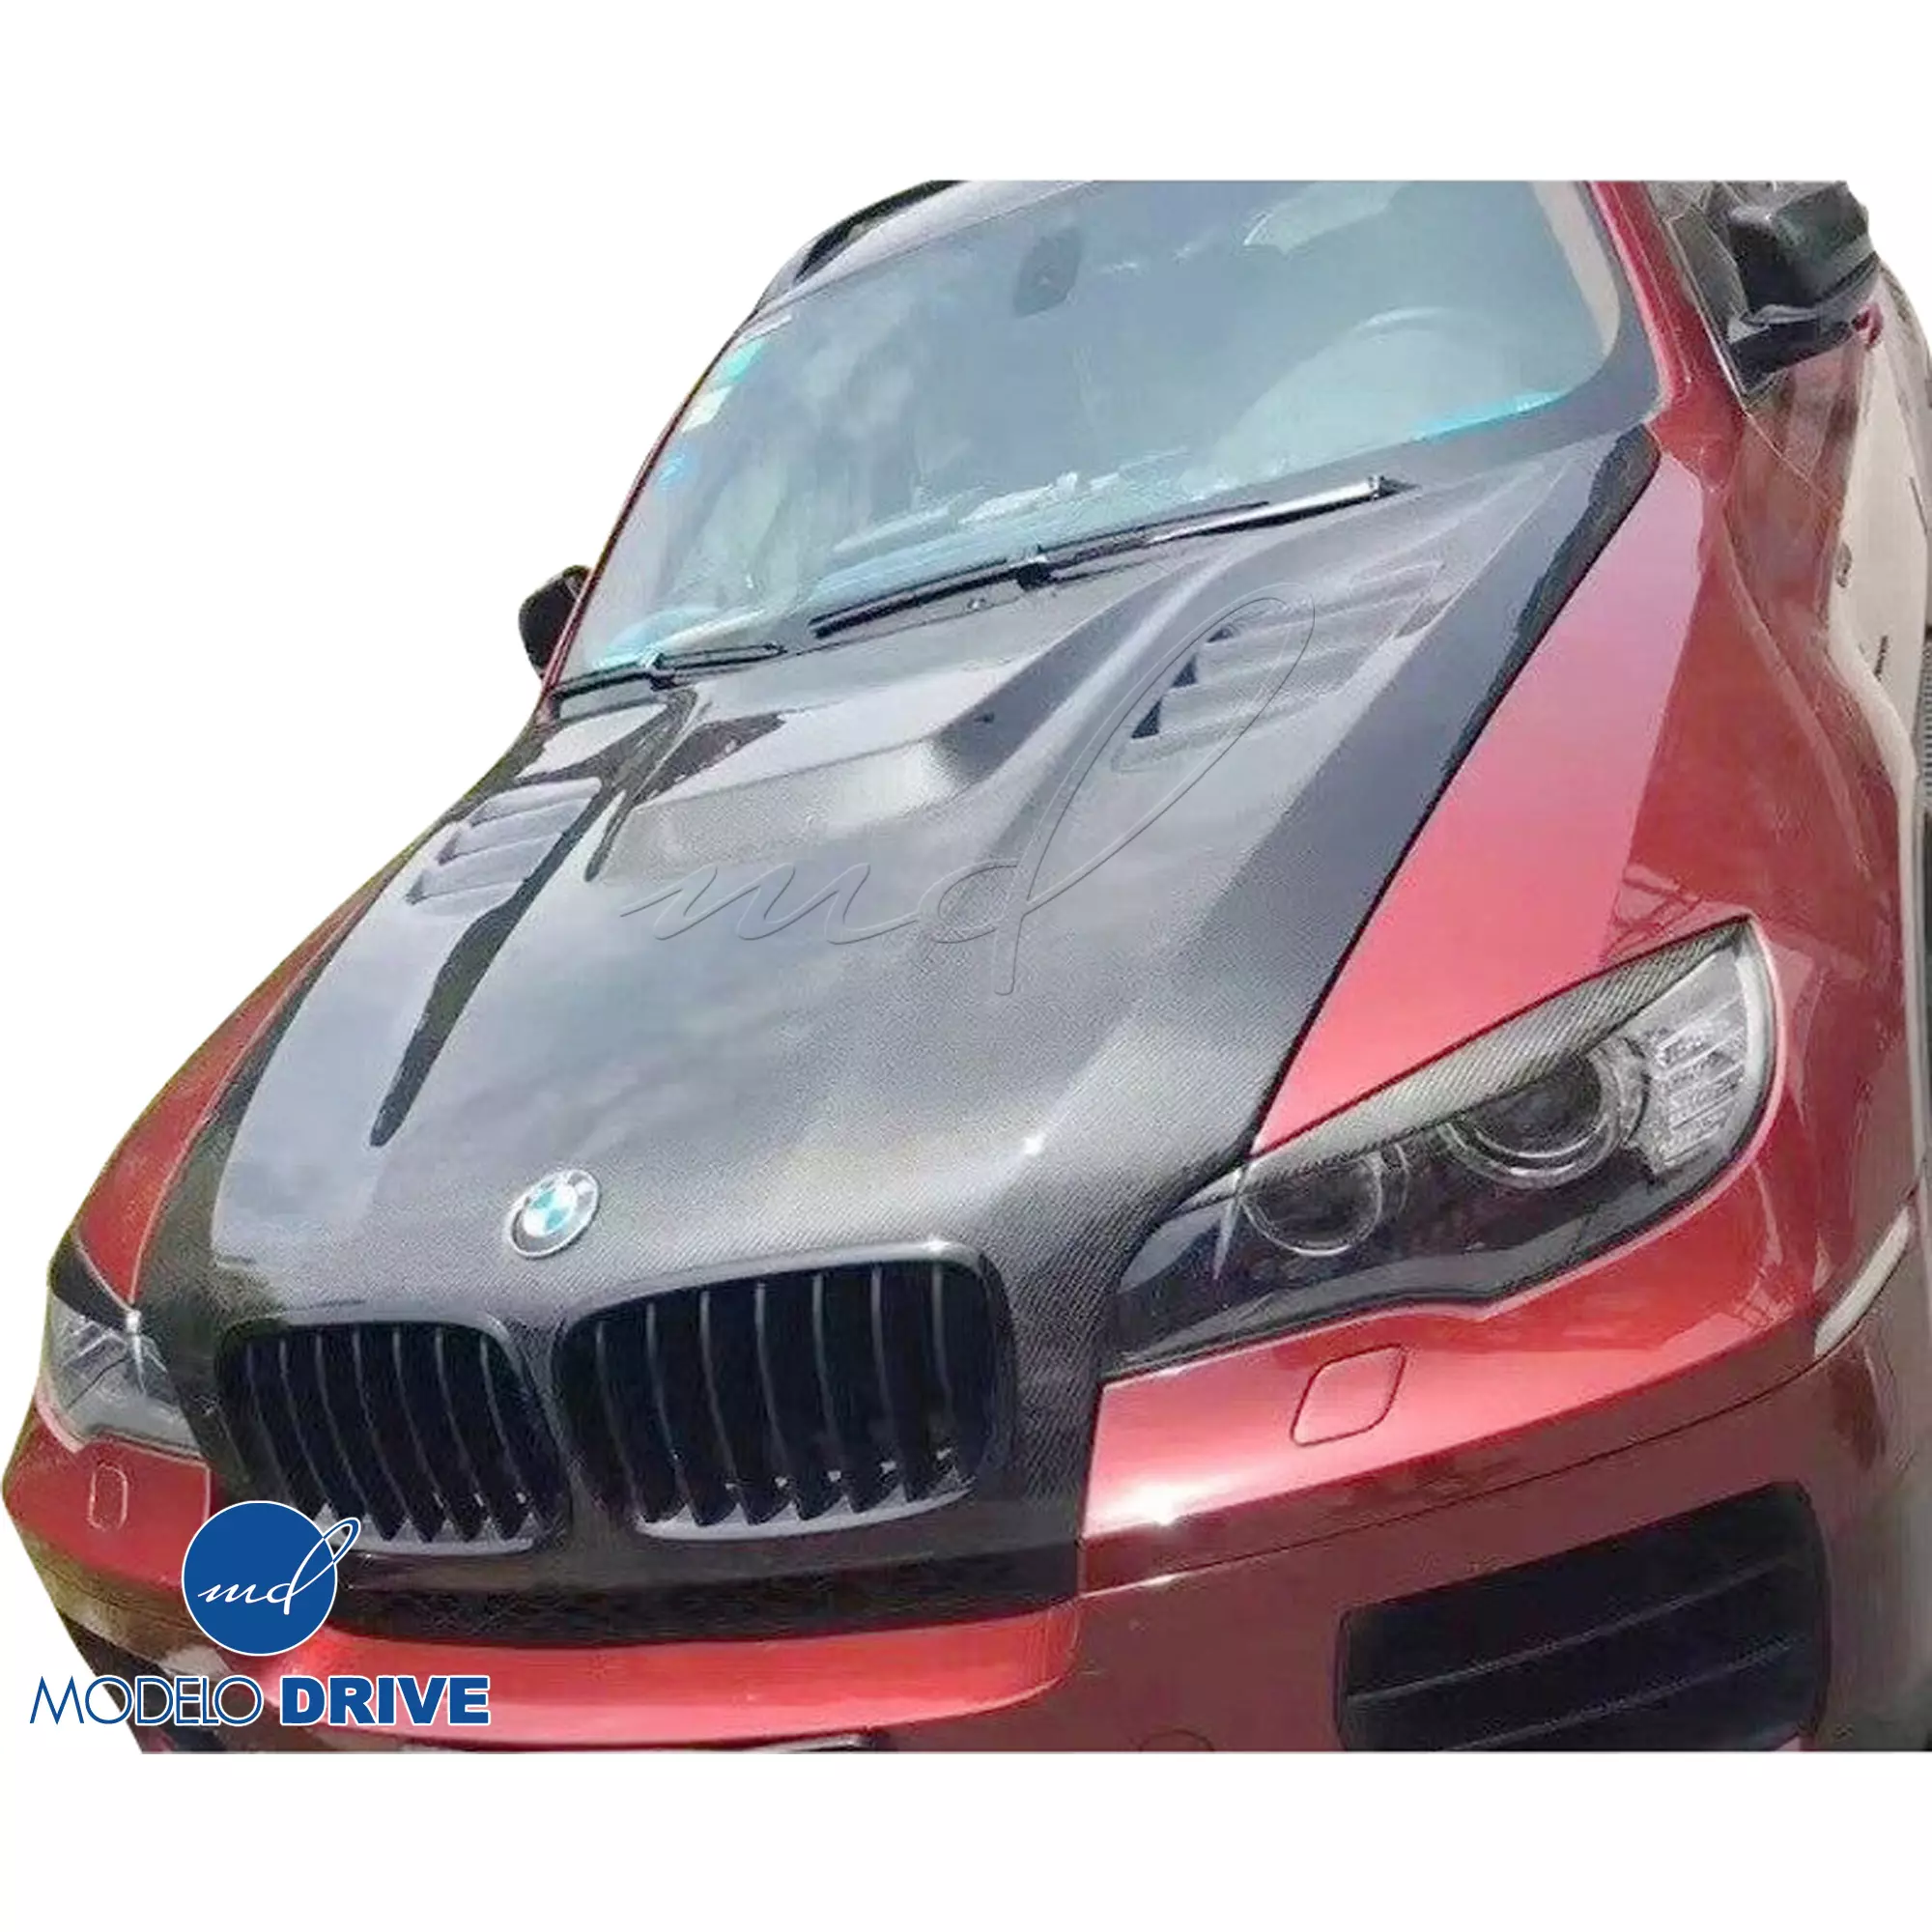 ModeloDrive Carbon Fiber VORT Hood > BMW X6 E71 2008-2014 - Image 2